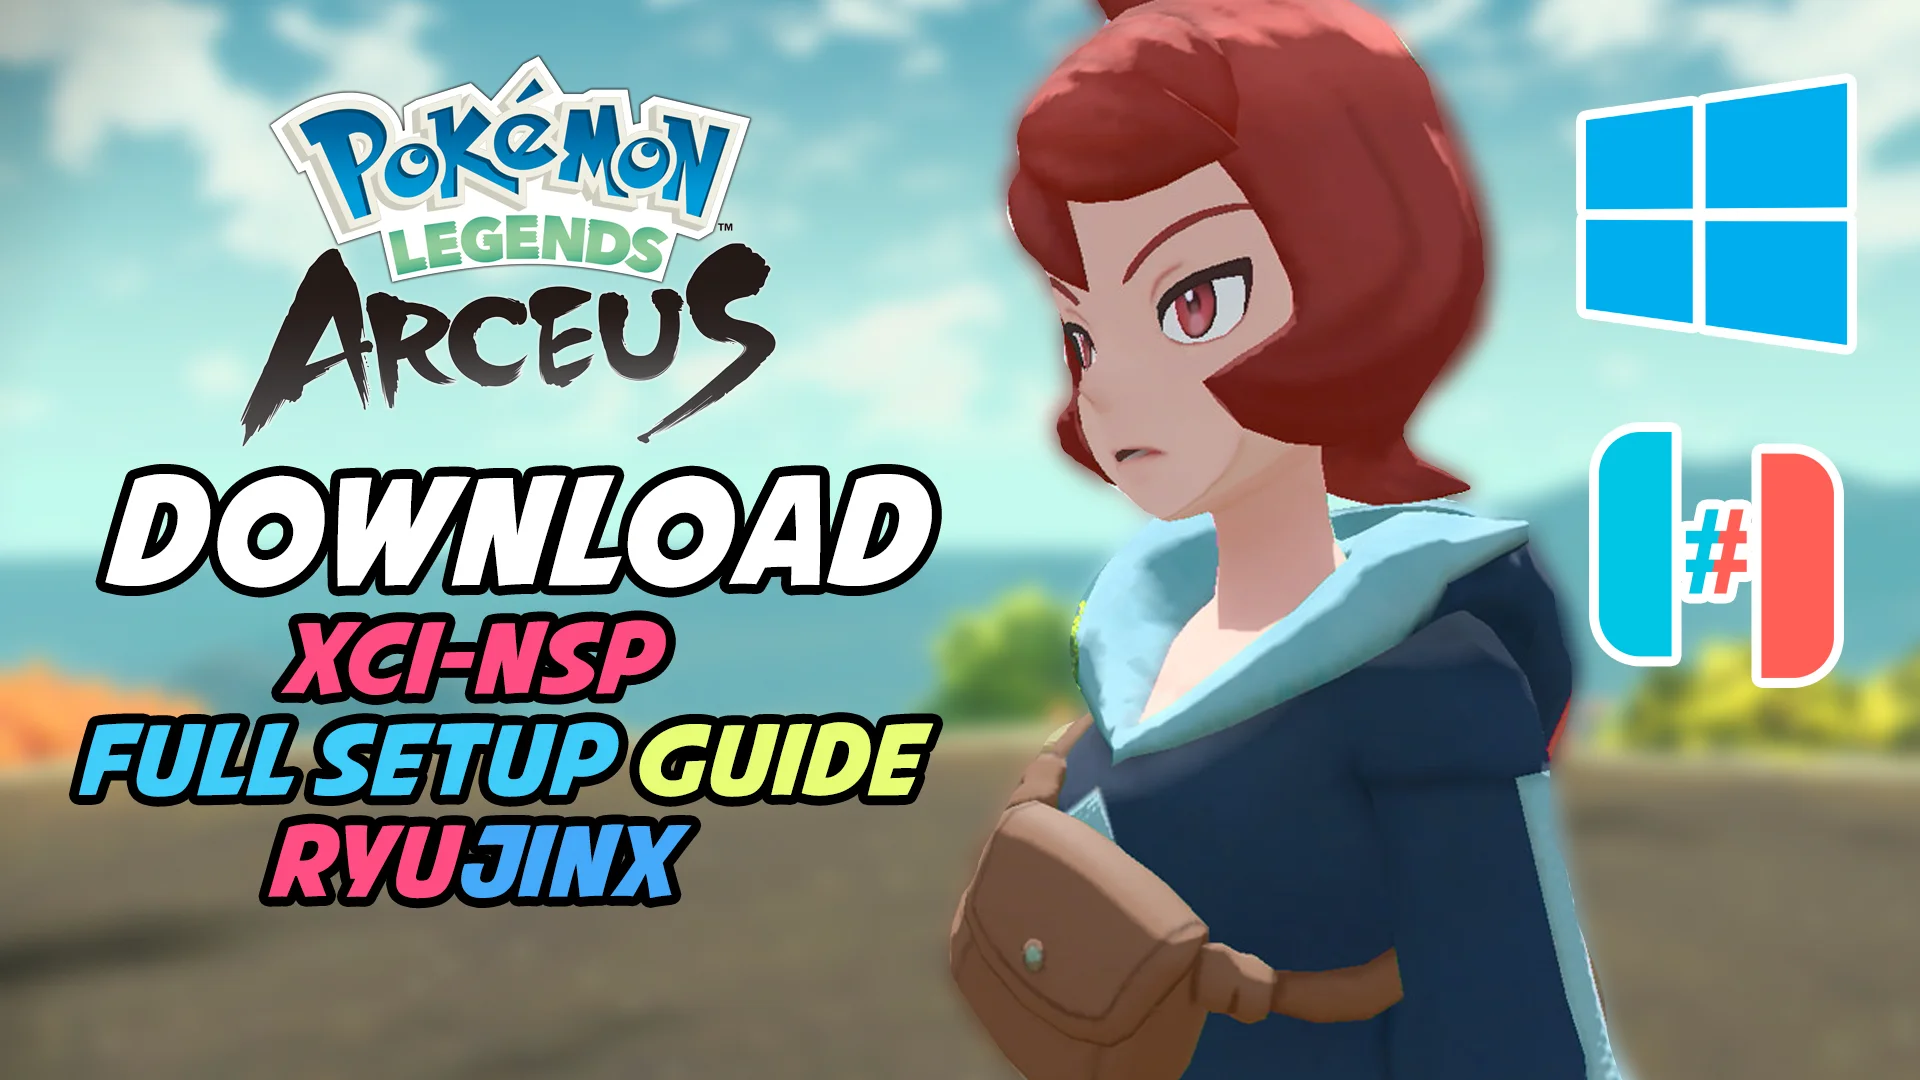 How To Install Pokémon Legends Arceus on PC [YUZU] on Vimeo